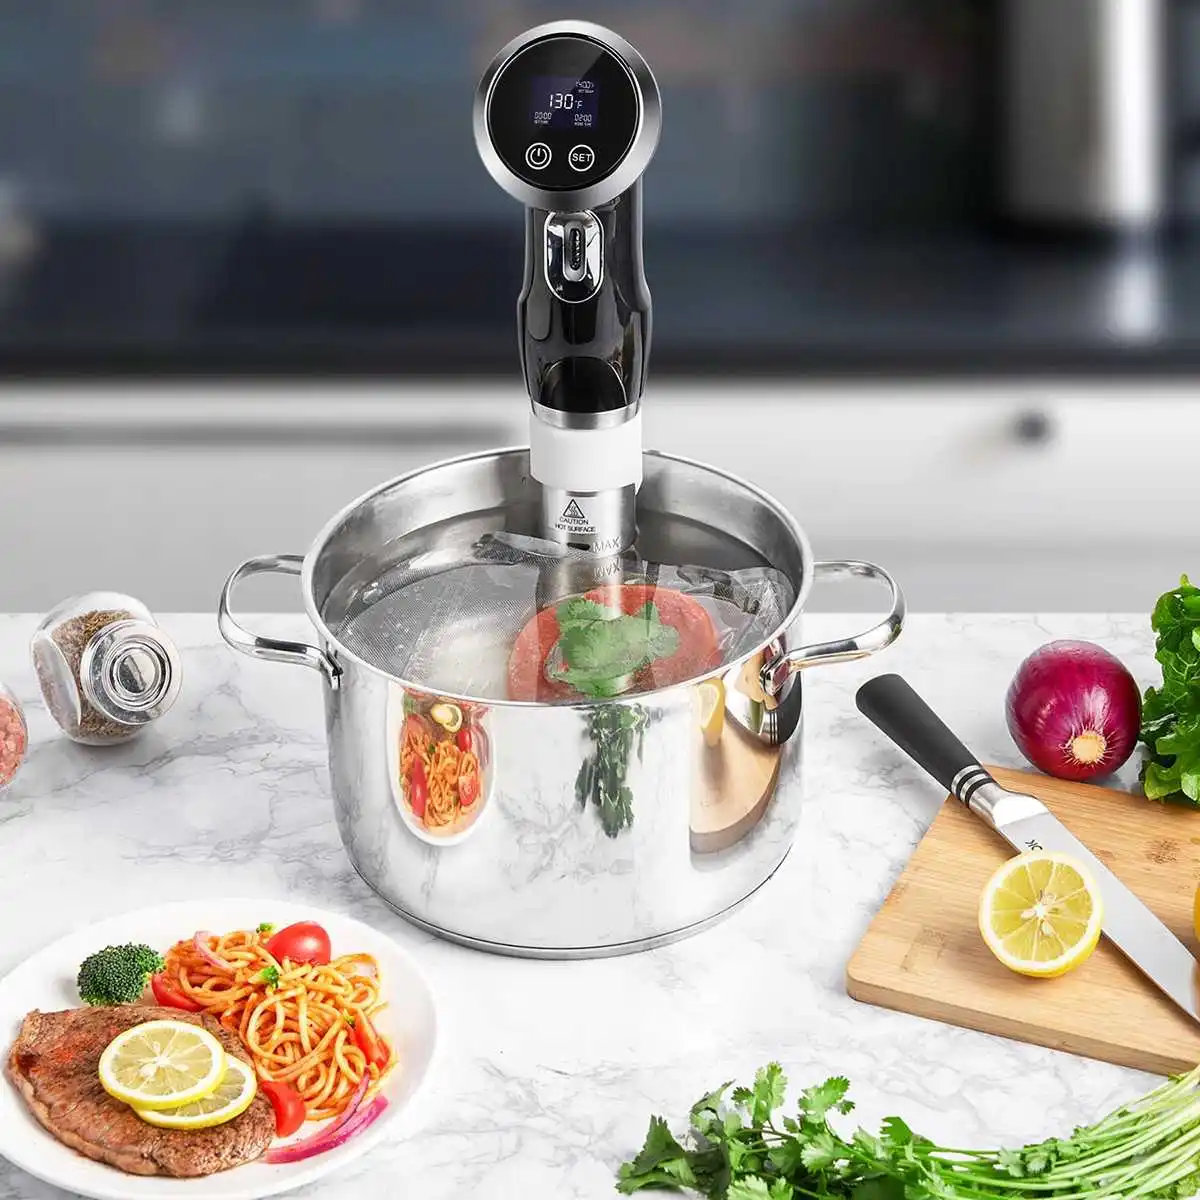 Bolomix 1500 Вт приборы для приготовления пищи вакуумная медленная Sous Vide кухонная плита мощный погружной циркулятор цифровой таймер из нержавеющей стали